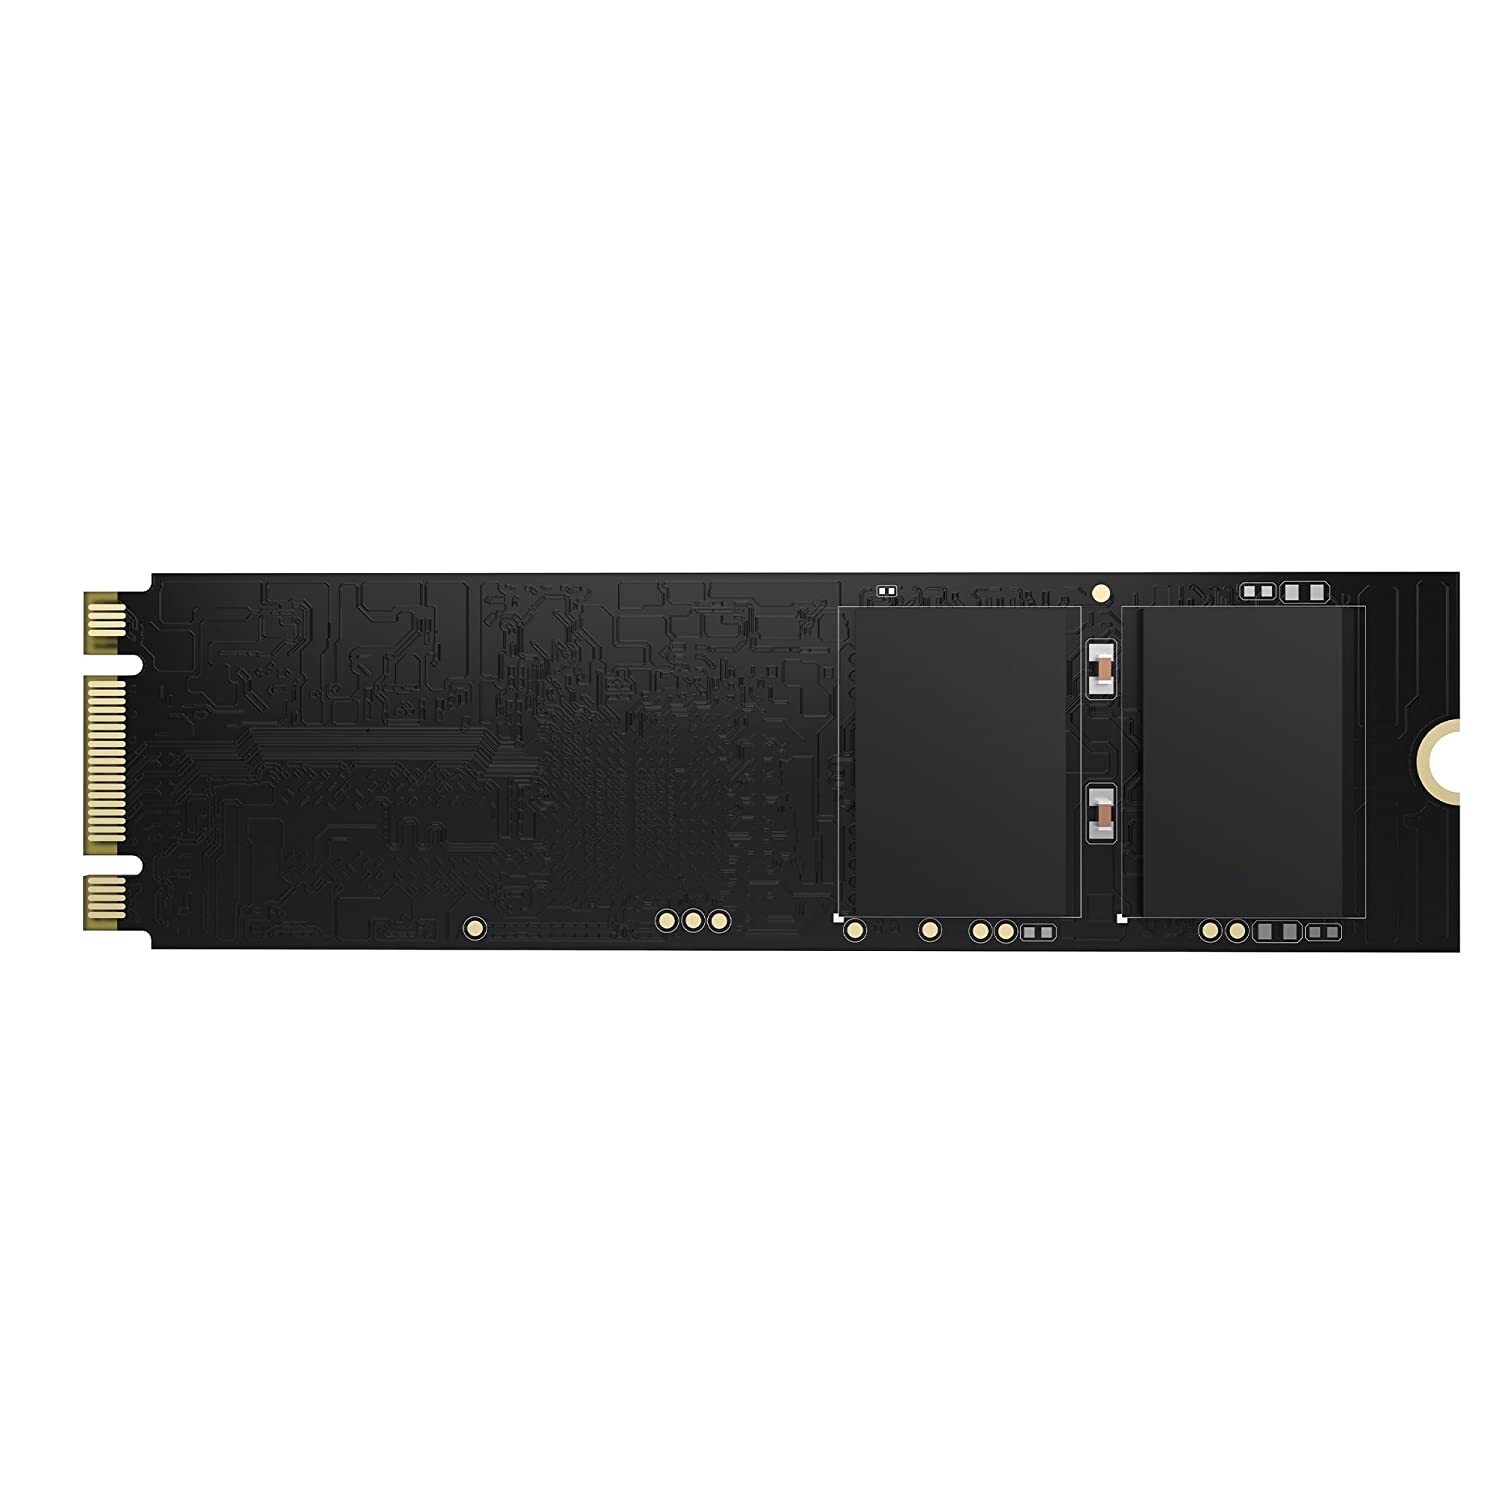 HP SSD S700 M.2 2280 120GB SATA III 3D TLC NAND Internal Solid State Drive (SSD)-M000000000596 www.mysocially.com